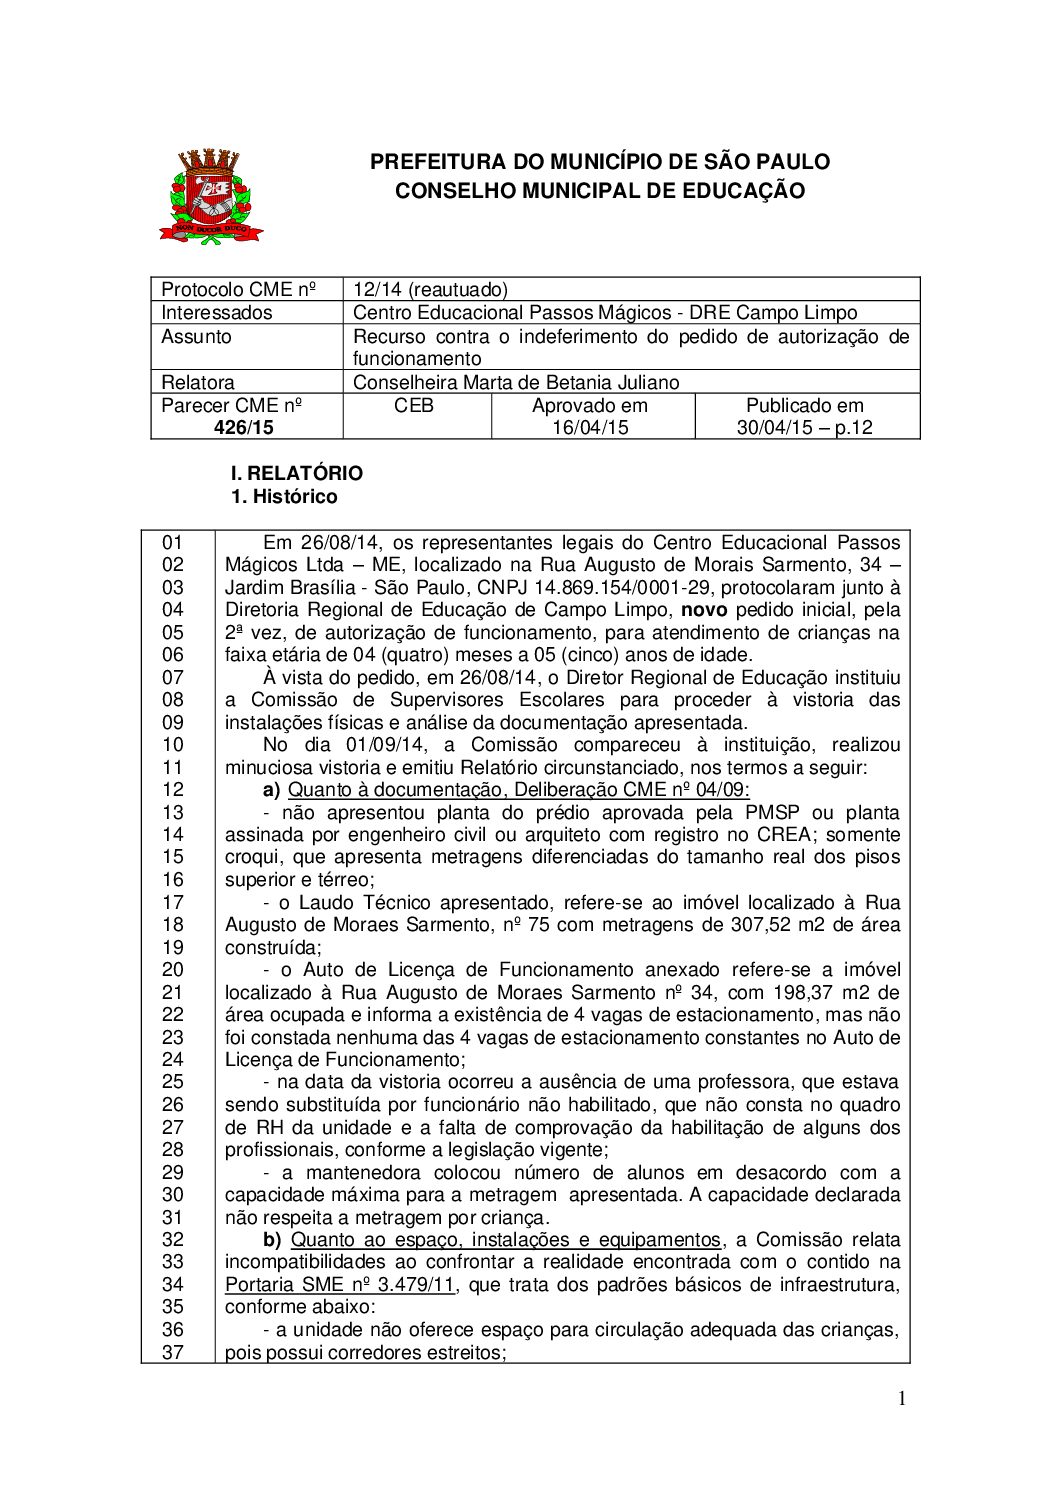 Parecer CME nº 426/2015 - Centro Educacional Passos Mágicos (DRE Campo Limpo) - Recurso contra o indeferimento do pedido de autorização de funcionamento 